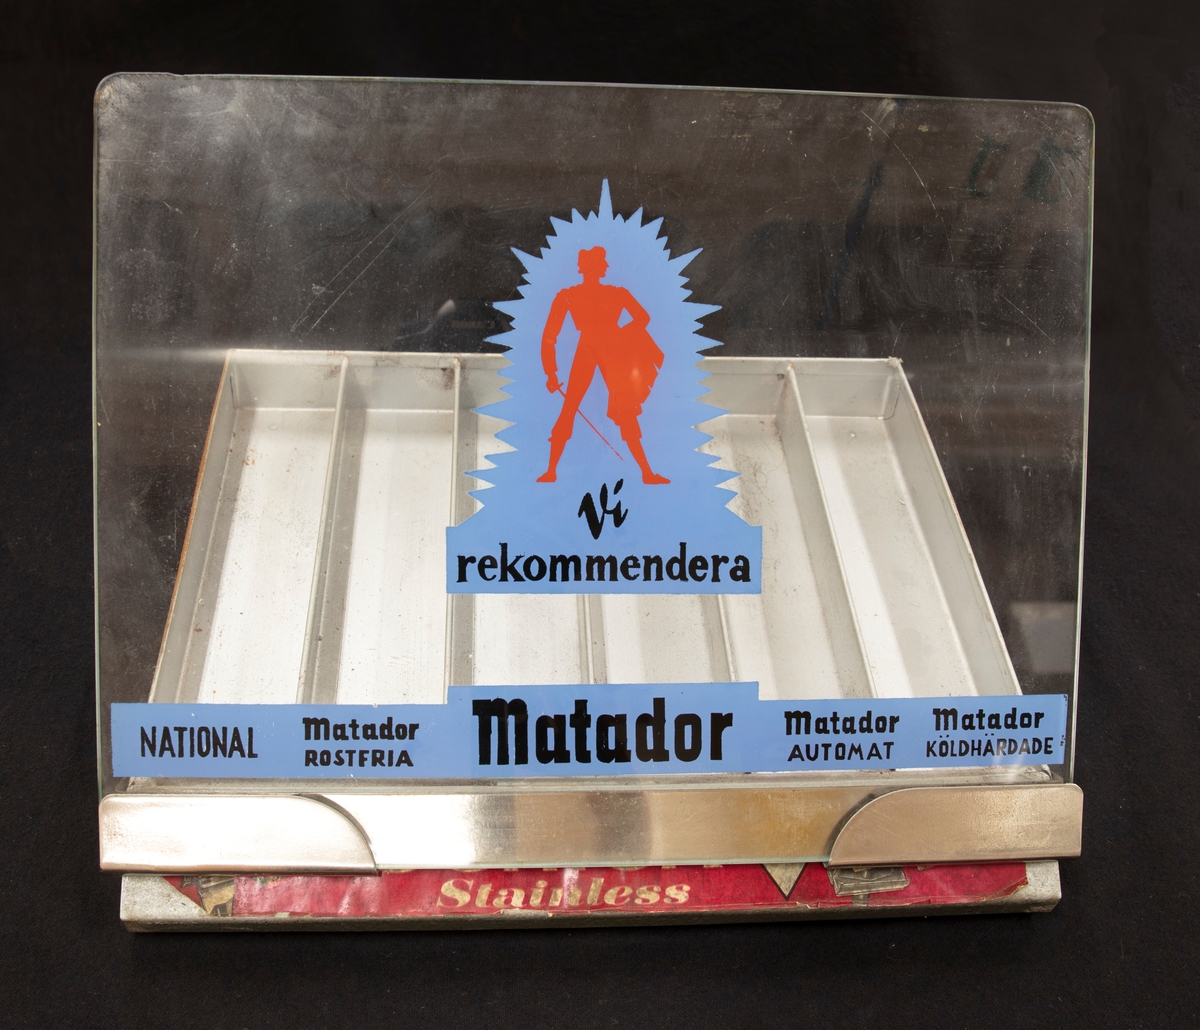 Ett ställ för rakblad. Sex olika fack för olika rakblad, för försäljning: National, Matador fostfria, Matador, Matador automat, Matador köldhärdade